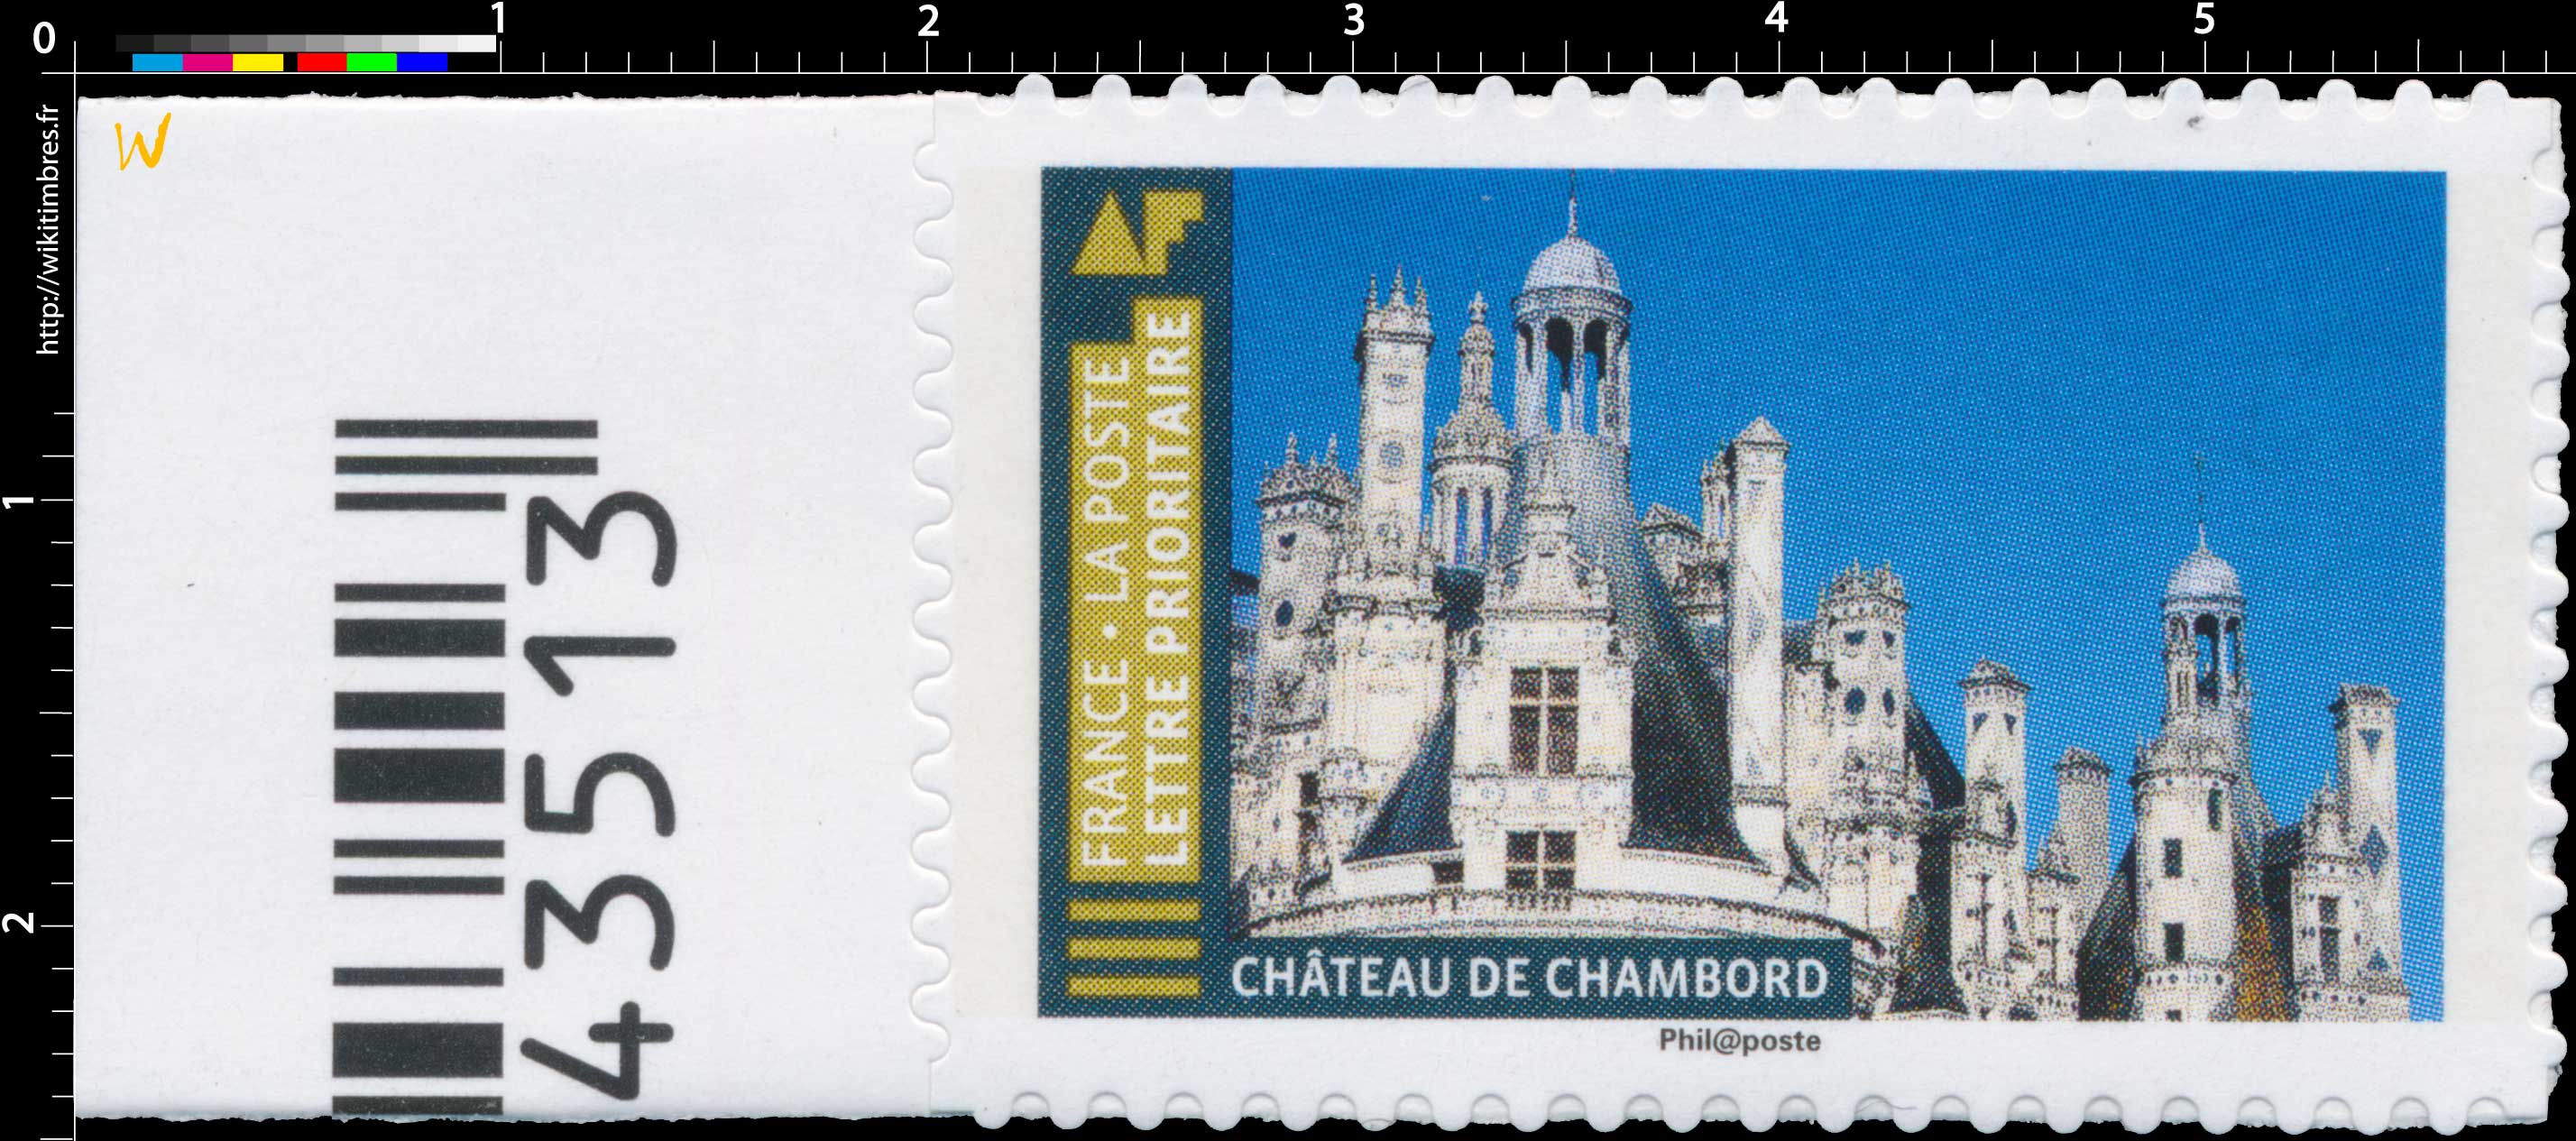 2019 Château de Chambord